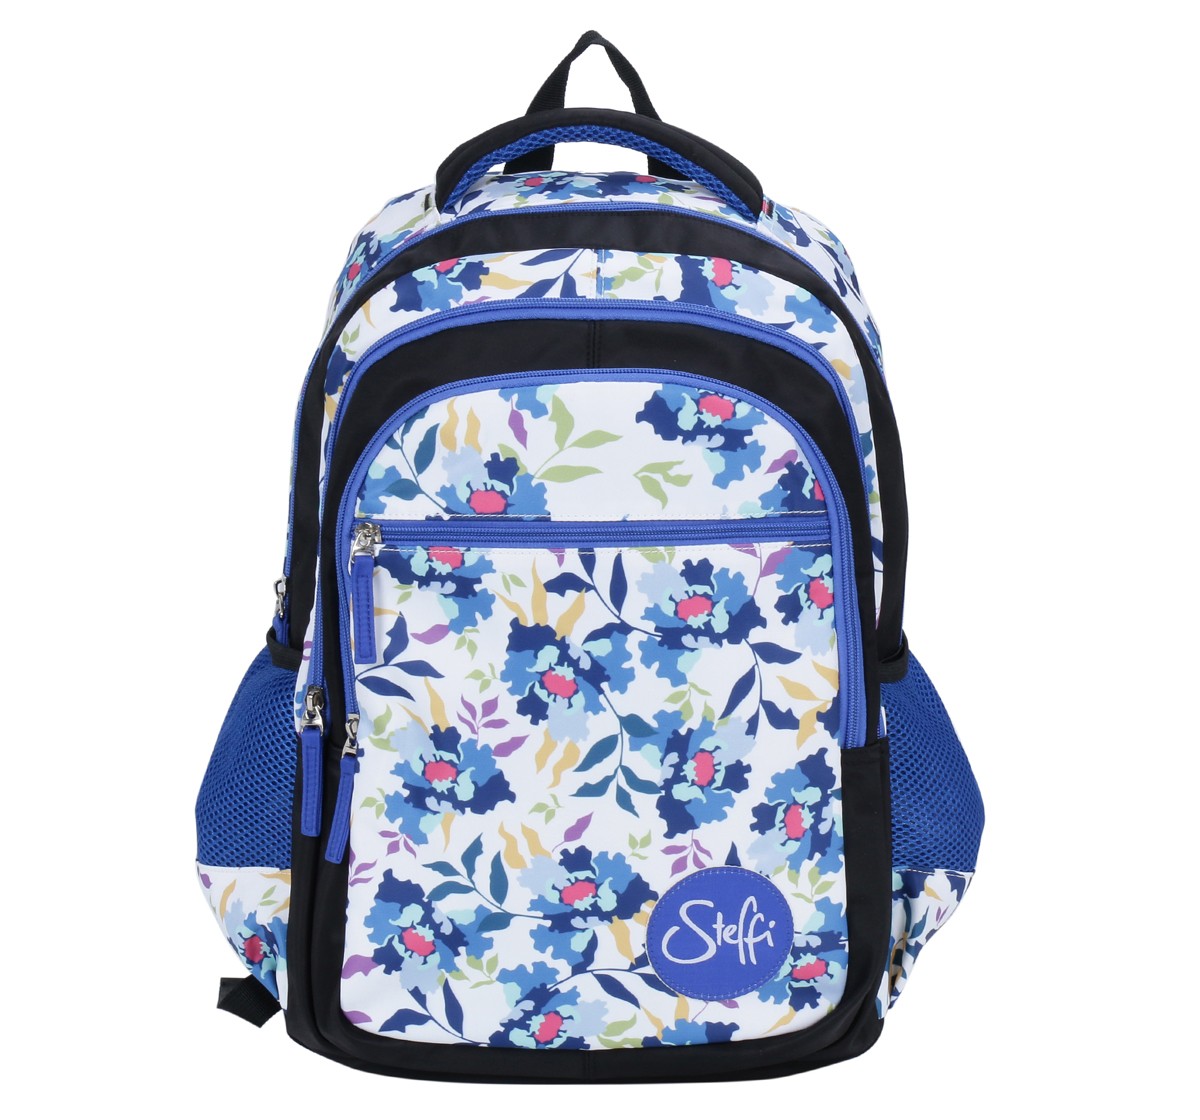 Simba Steffi Love Snowdrop 15 Backpack Multicolor 3Y+